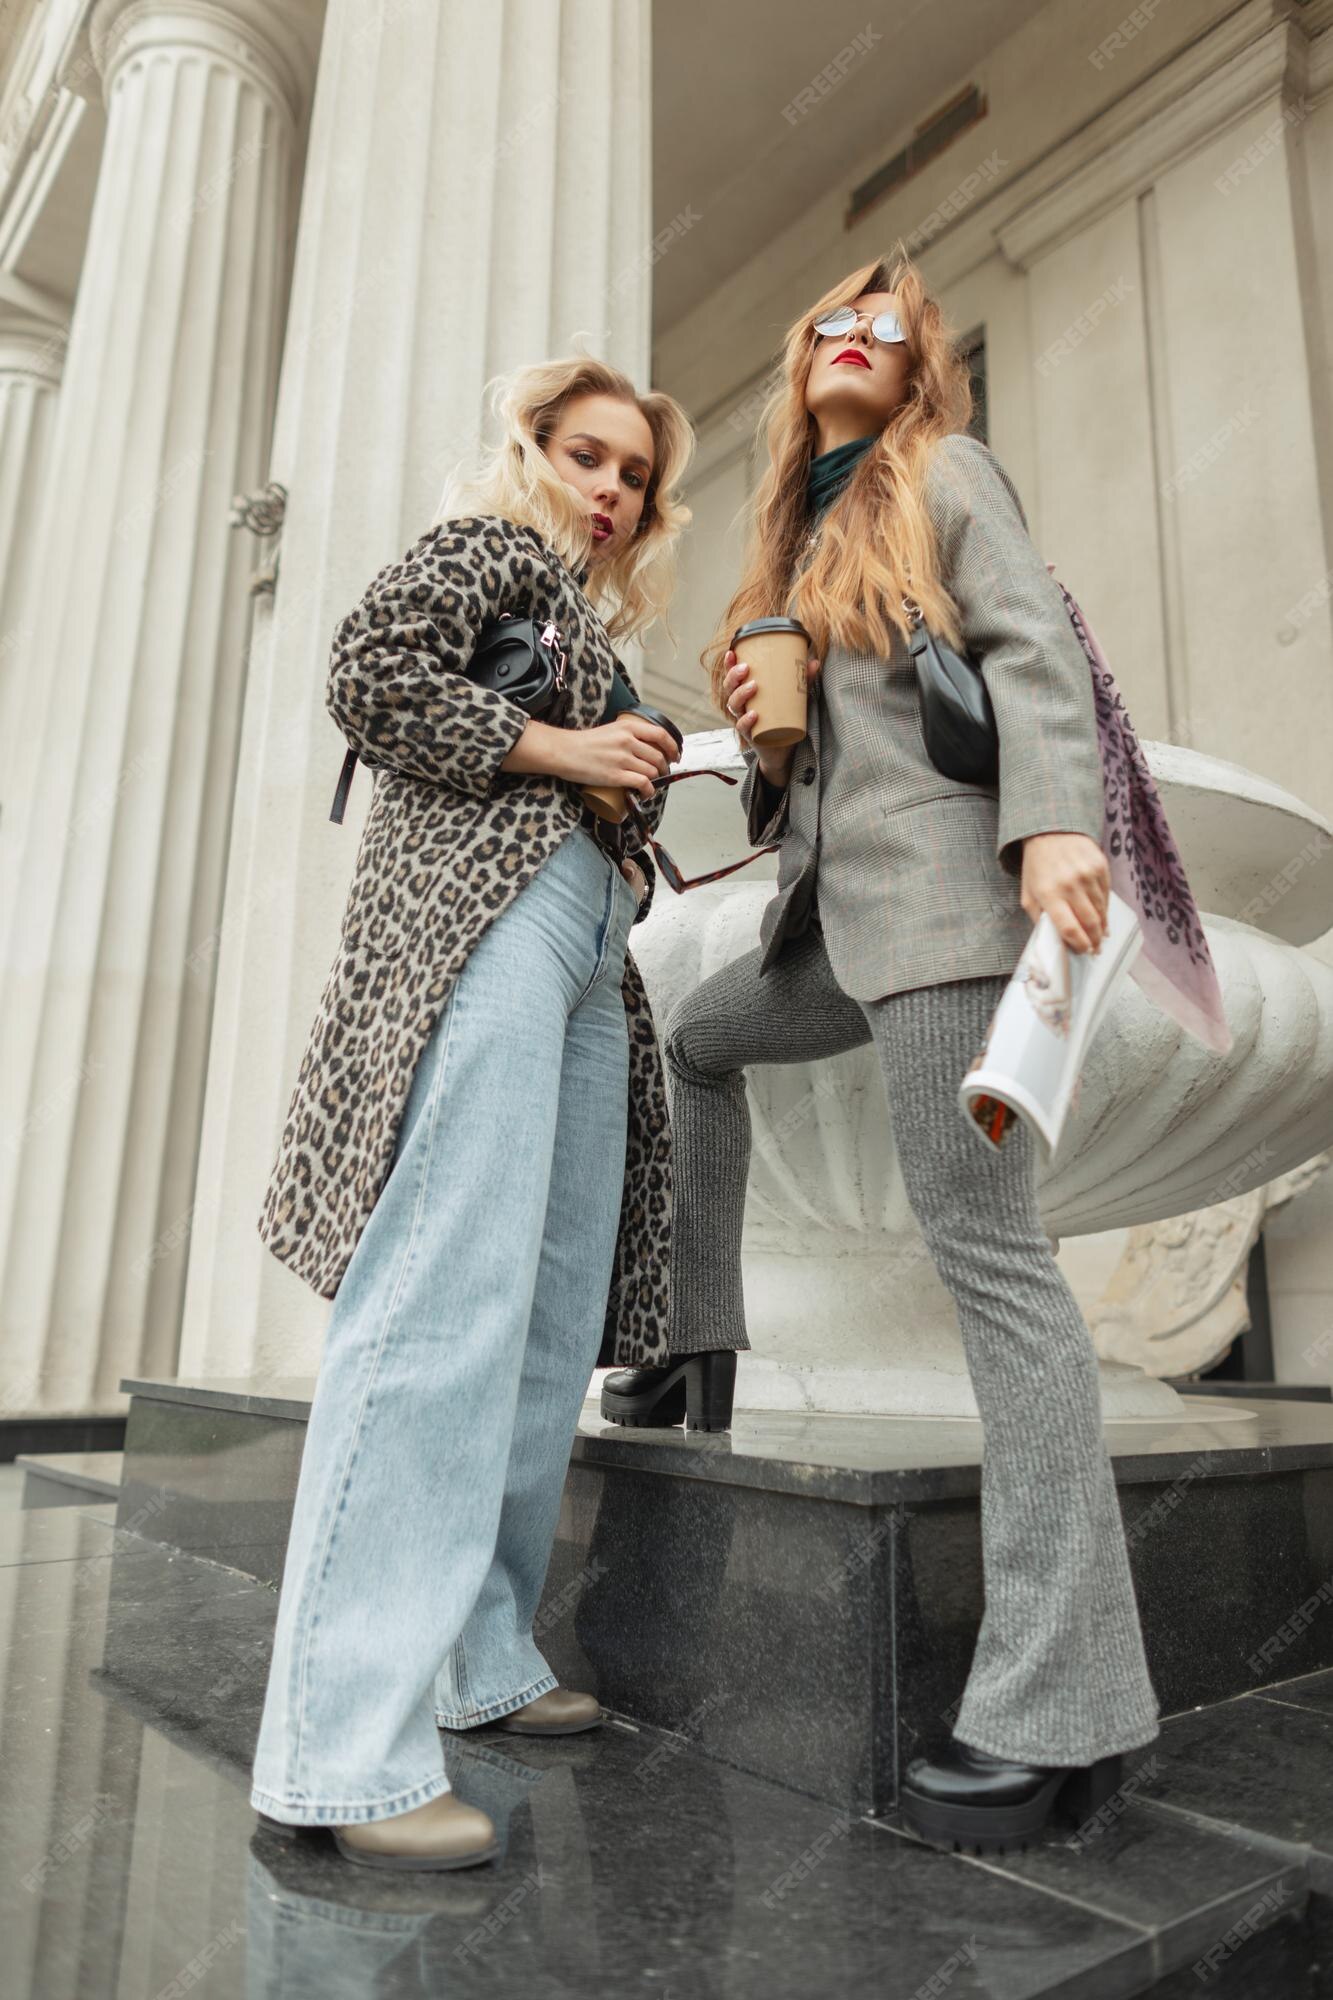 Dos mujeres de moda con una taza de café y una revista con ropa elegante de otoño con de leopardo, pantalones vaqueros, traje elegante y puestos de zapatos y poses